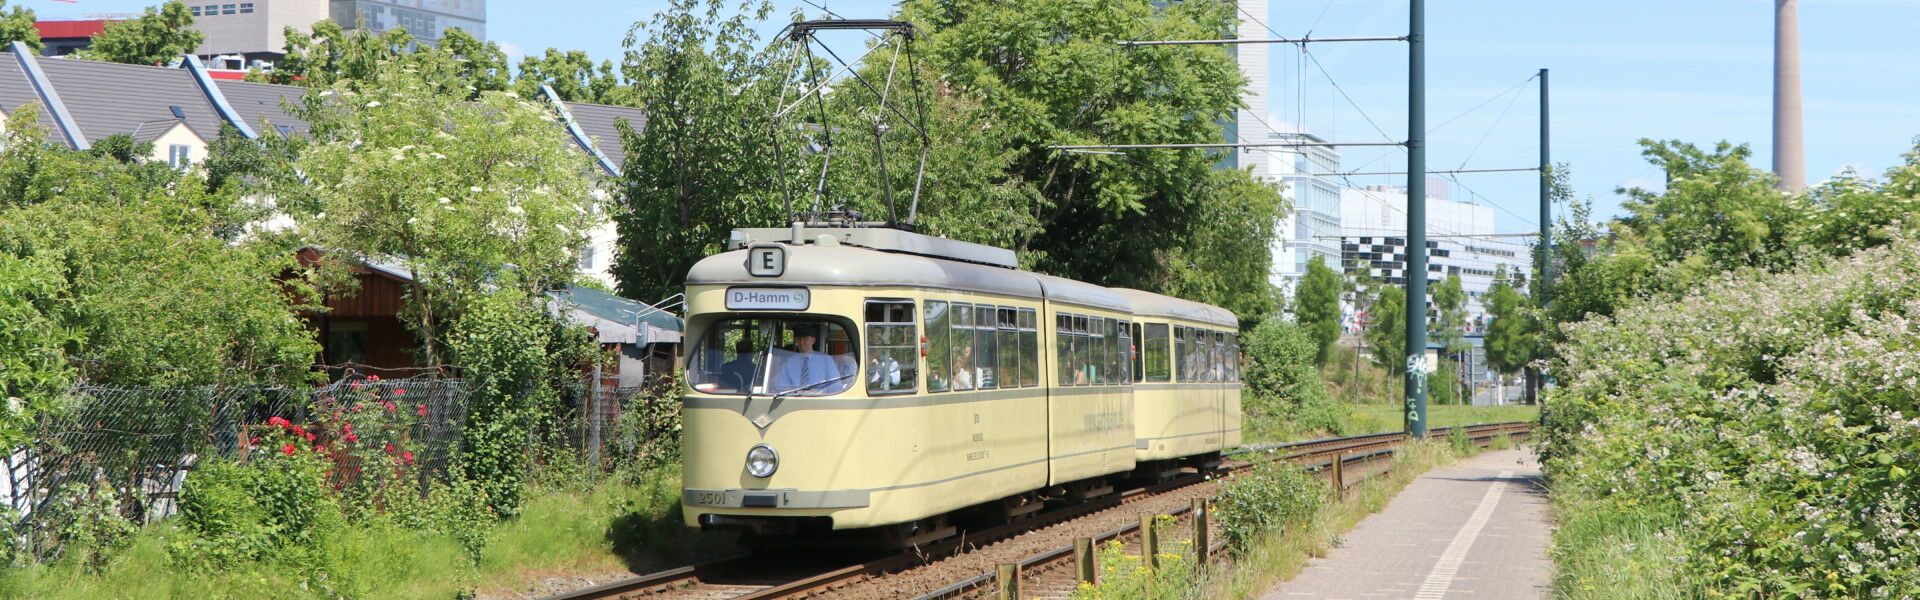 Triebwagen 2501 befährt mit seinem Beiwagen 1689 am 09.06.2019 die Strecke der Linie 706 in Richtung Hamm und wird in kürze die Haltestelle Hammer Dorfstraße erreichen. (Foto: Michael Kochems)